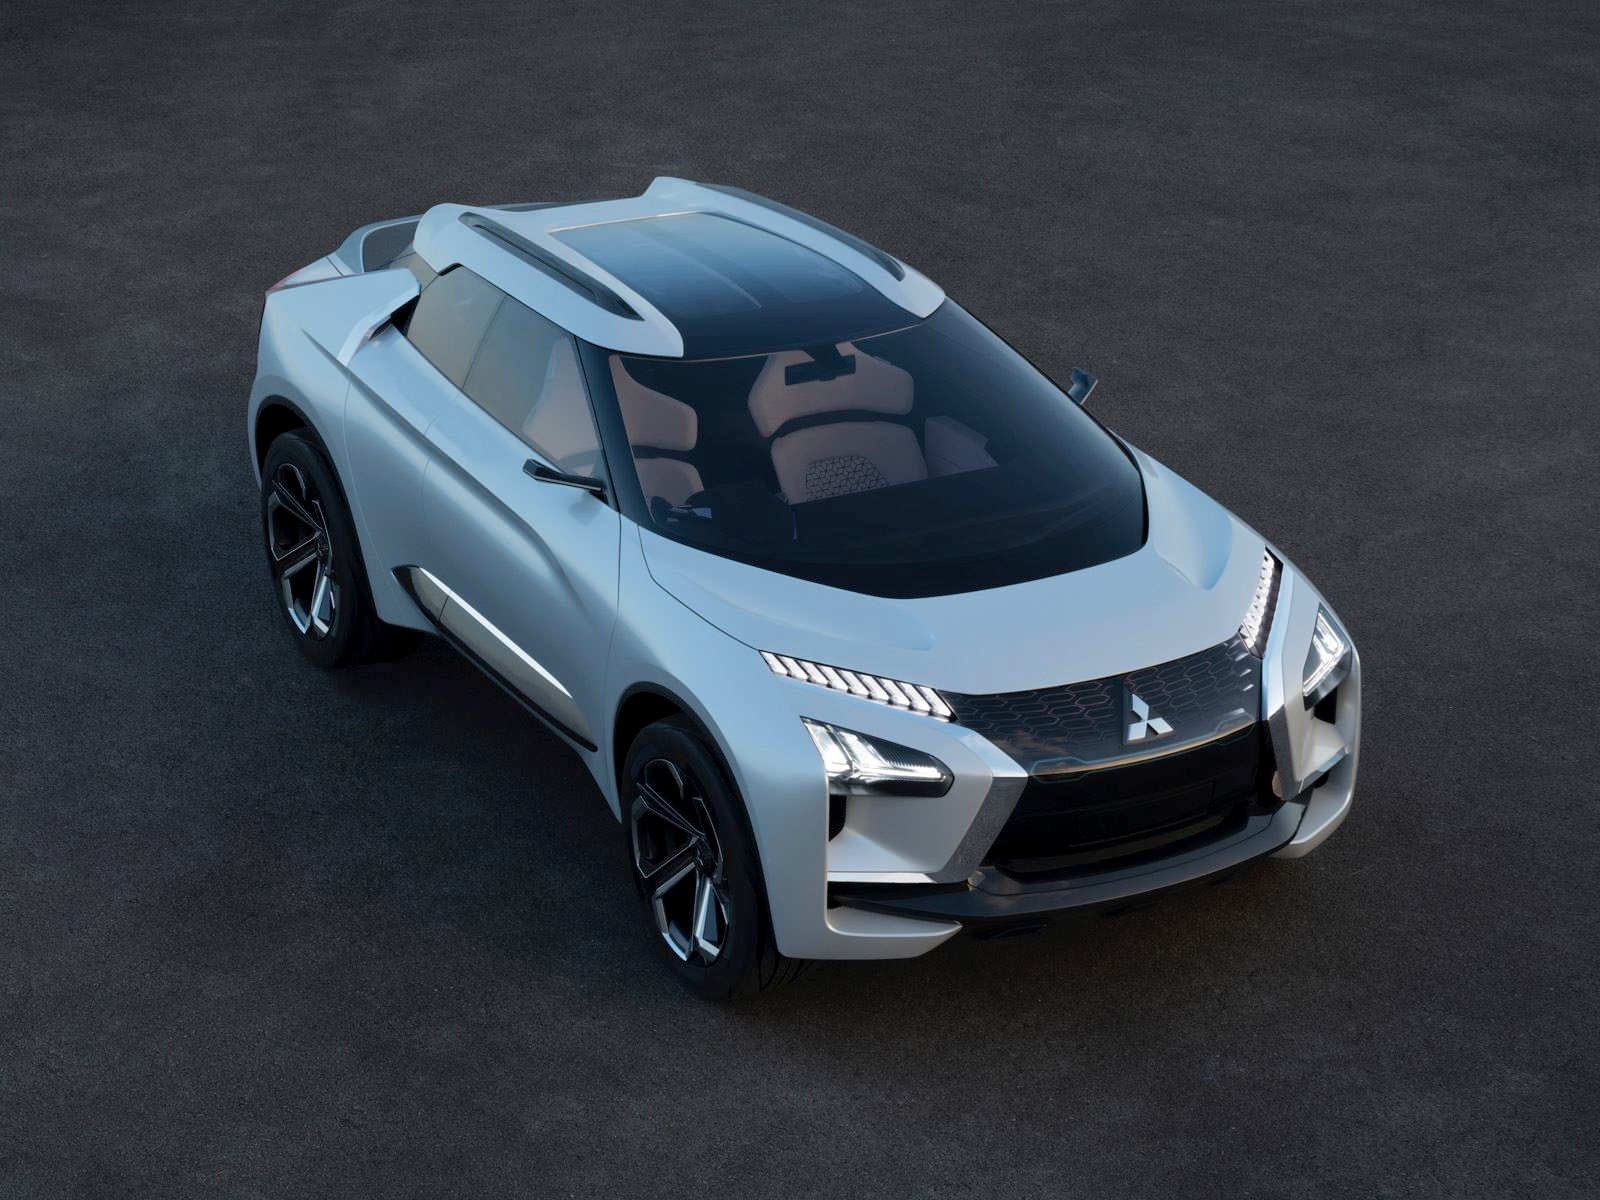 Директор по дизайну Mitsubishi говорит, что Lancer не будет «обычным хэтчбеком».